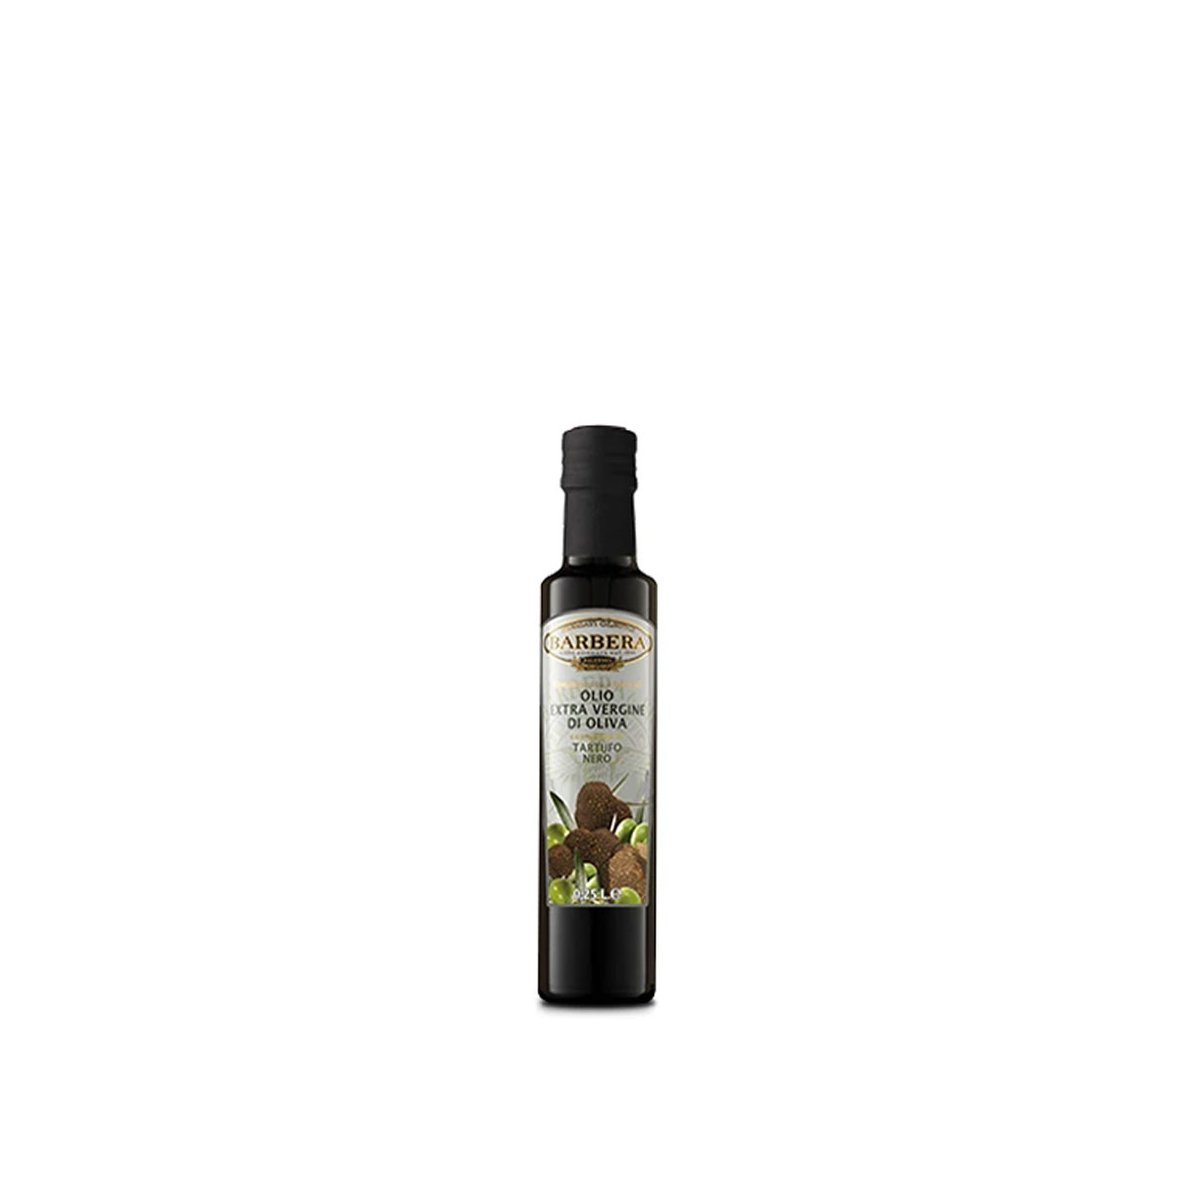 Olio Extravergine di Oliva aromatizzato al tartufo nero, 0,25 L